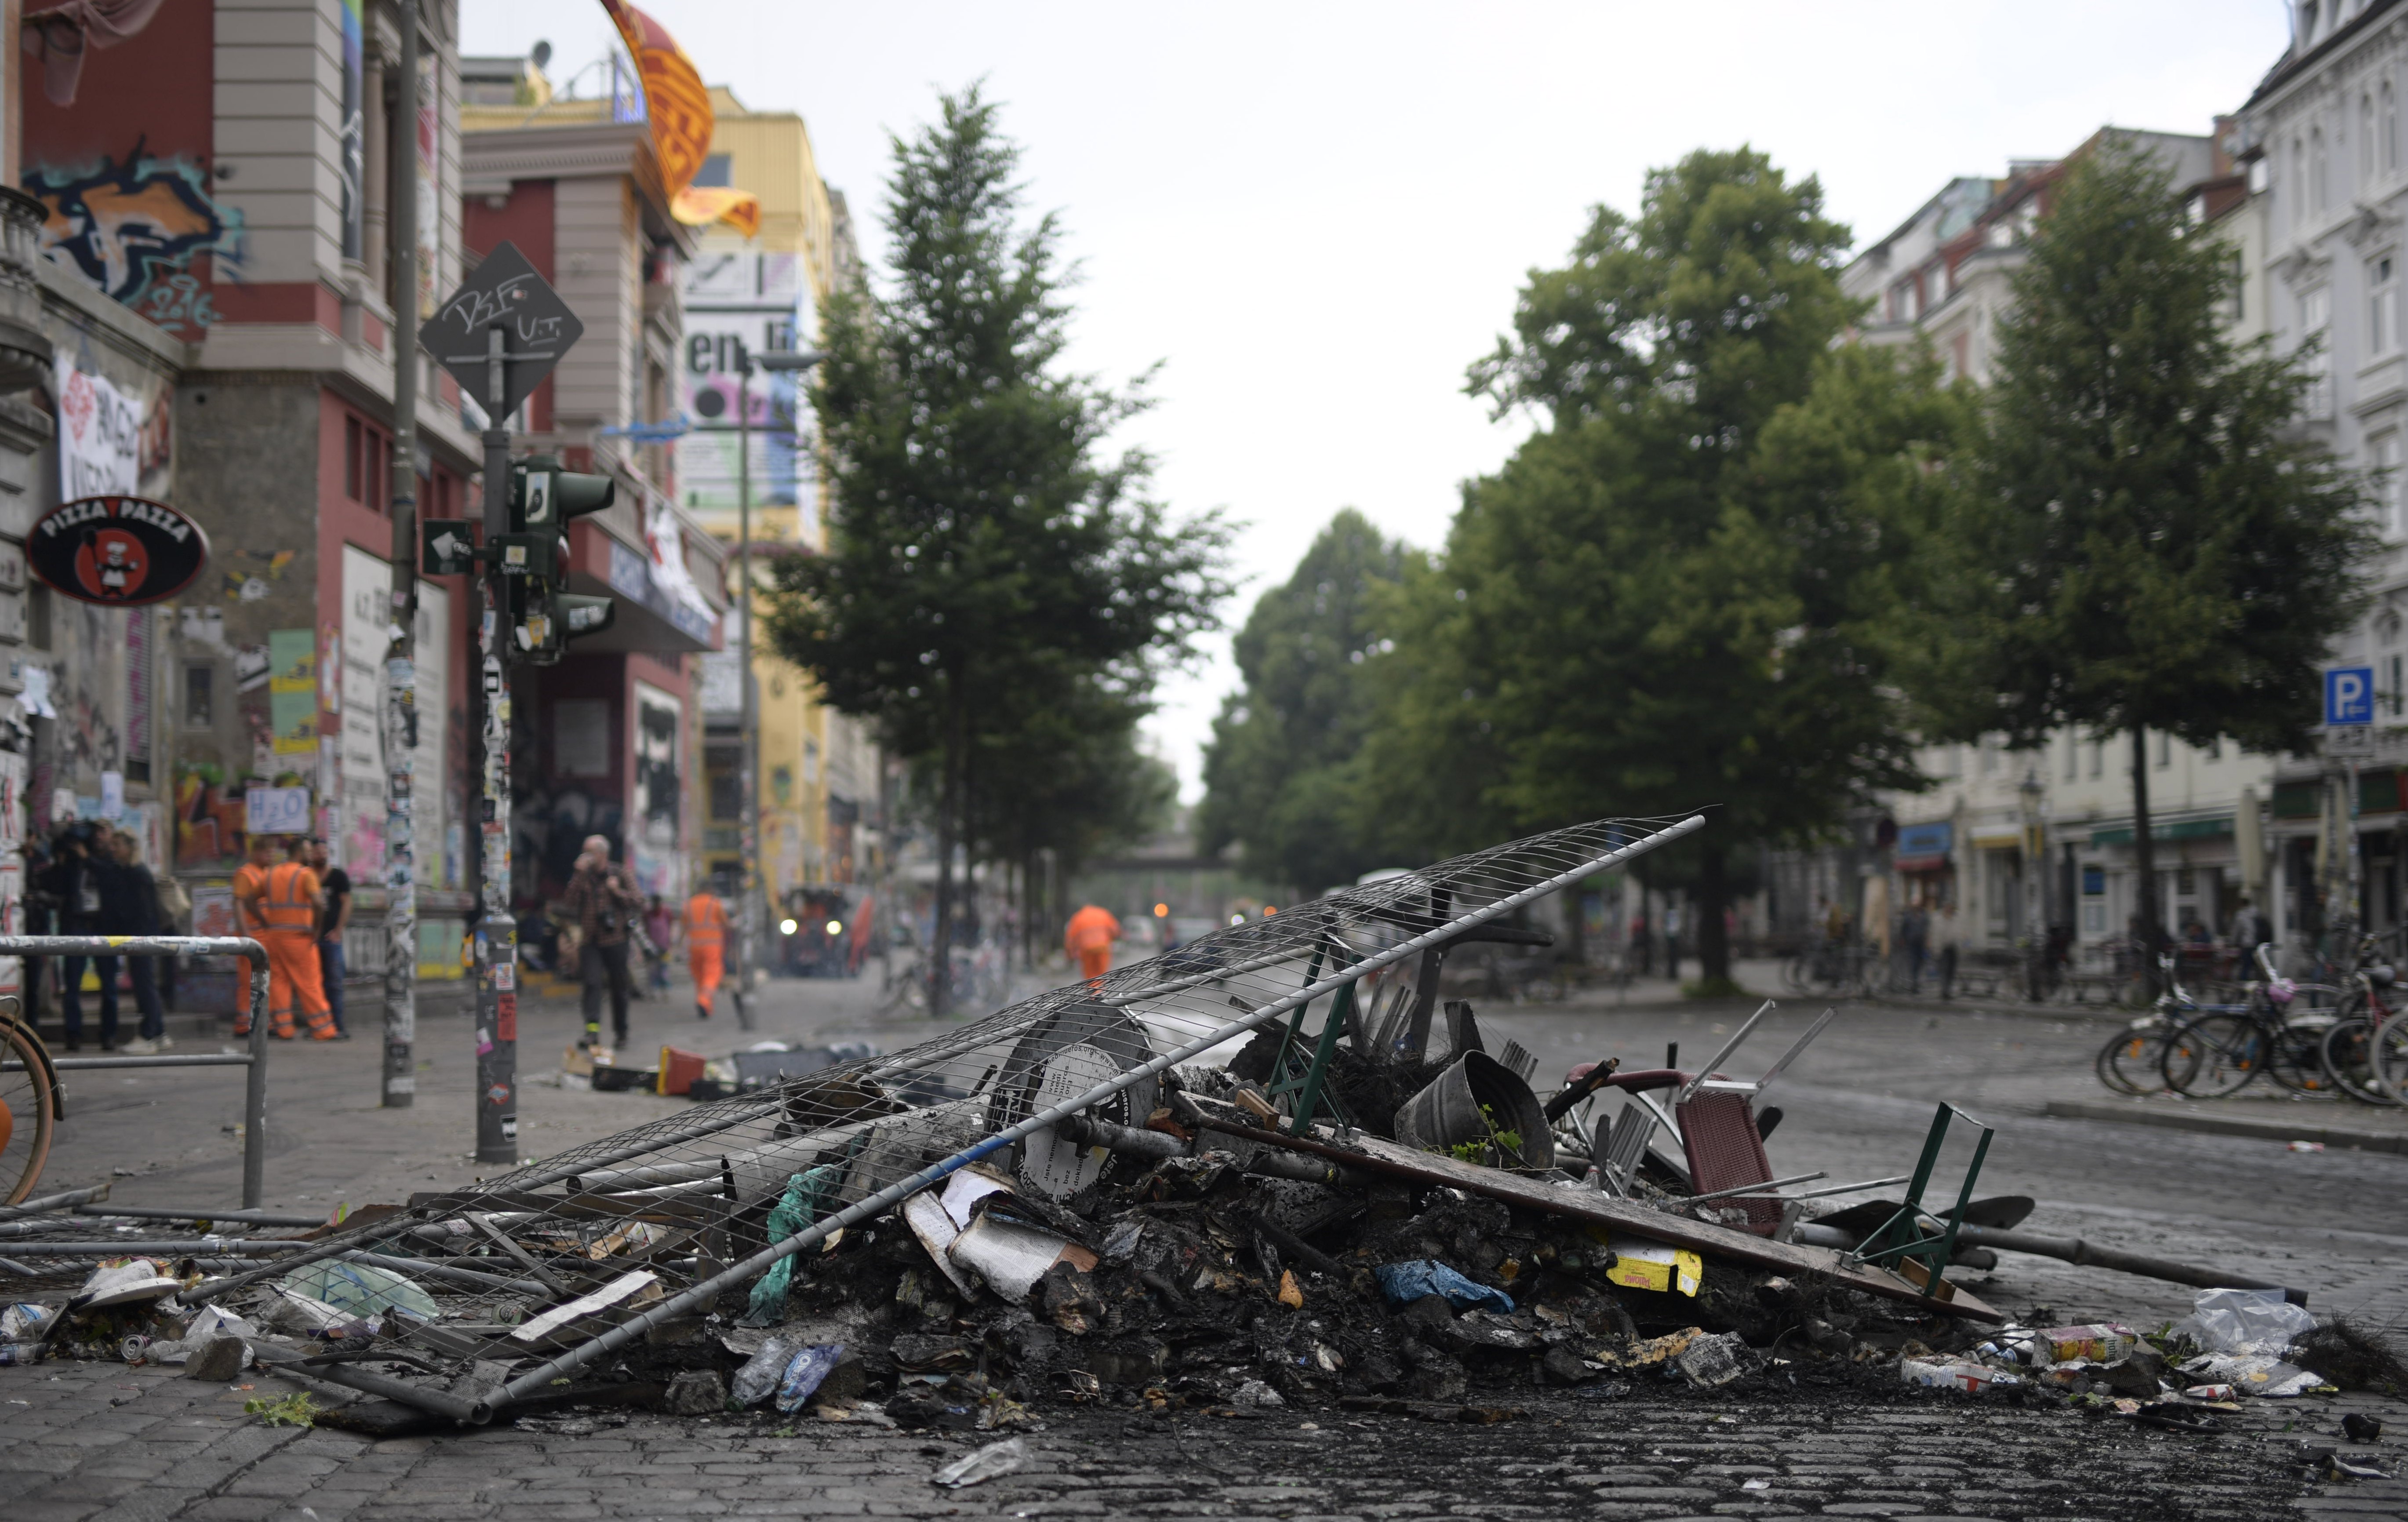 Горящи барикади, разбити магазини и банки, арести и сблъсъци съпътстват срещата на Г-20 в Хамбург